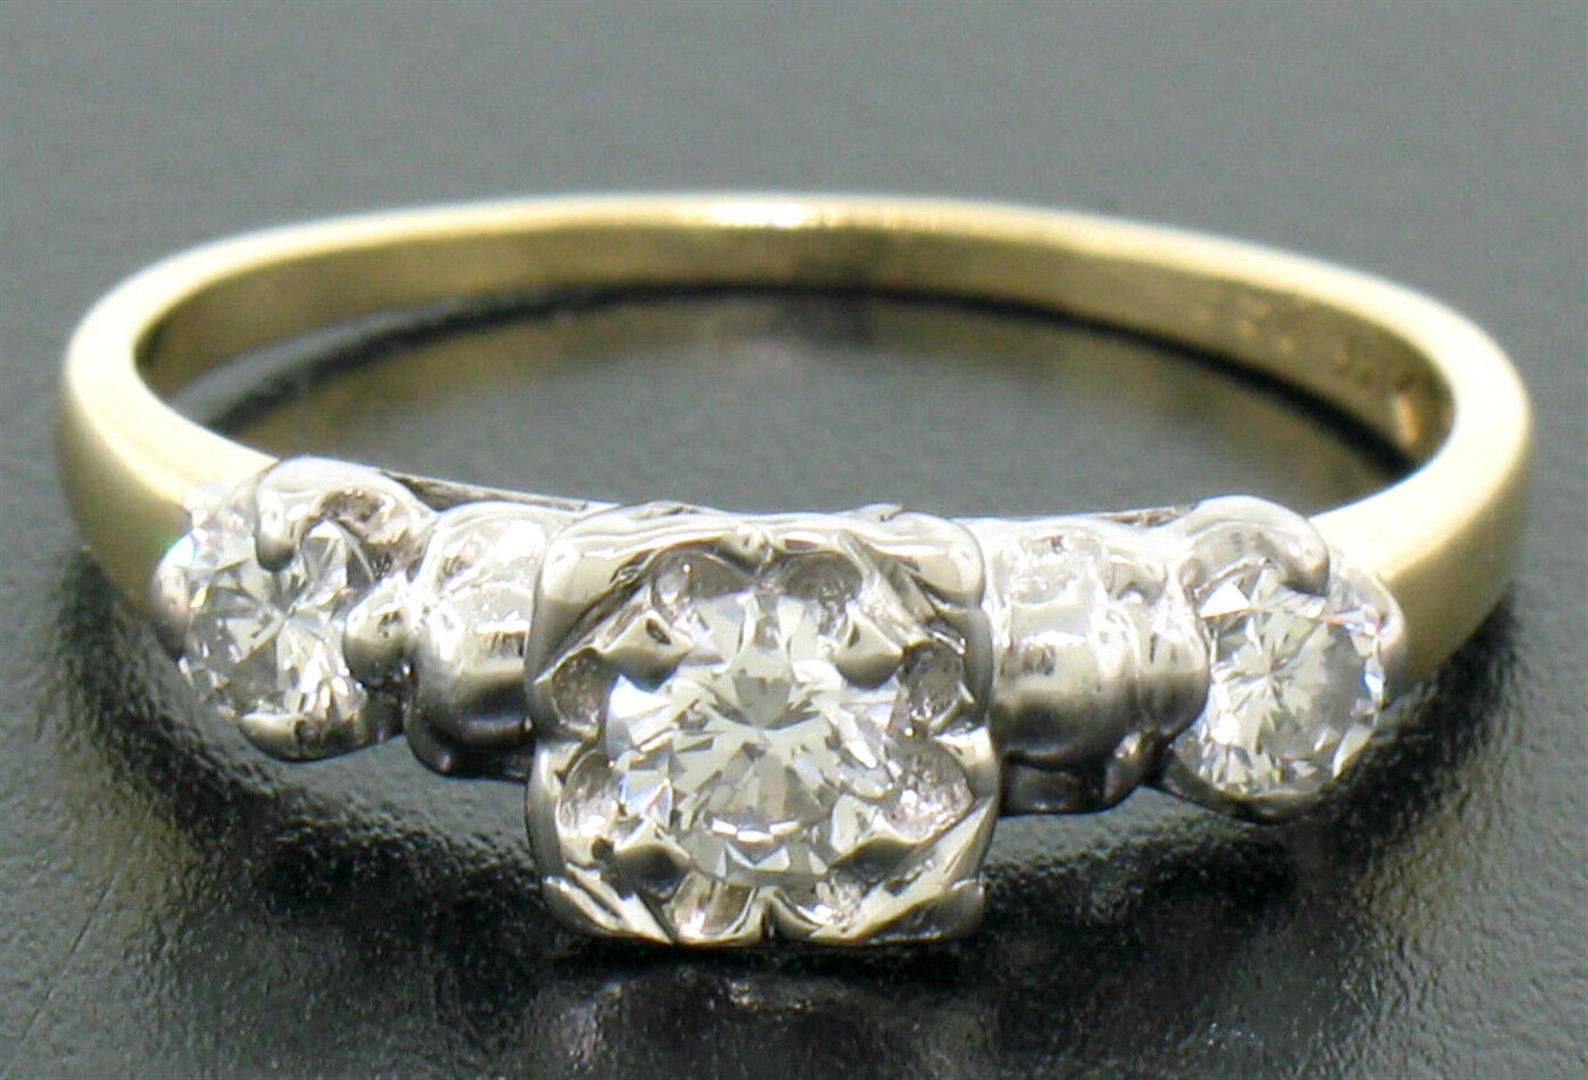 Vintage 14k Yellow & White Gold 0.40 ctw 3 Stone Illusion Set Round Diamond Ring